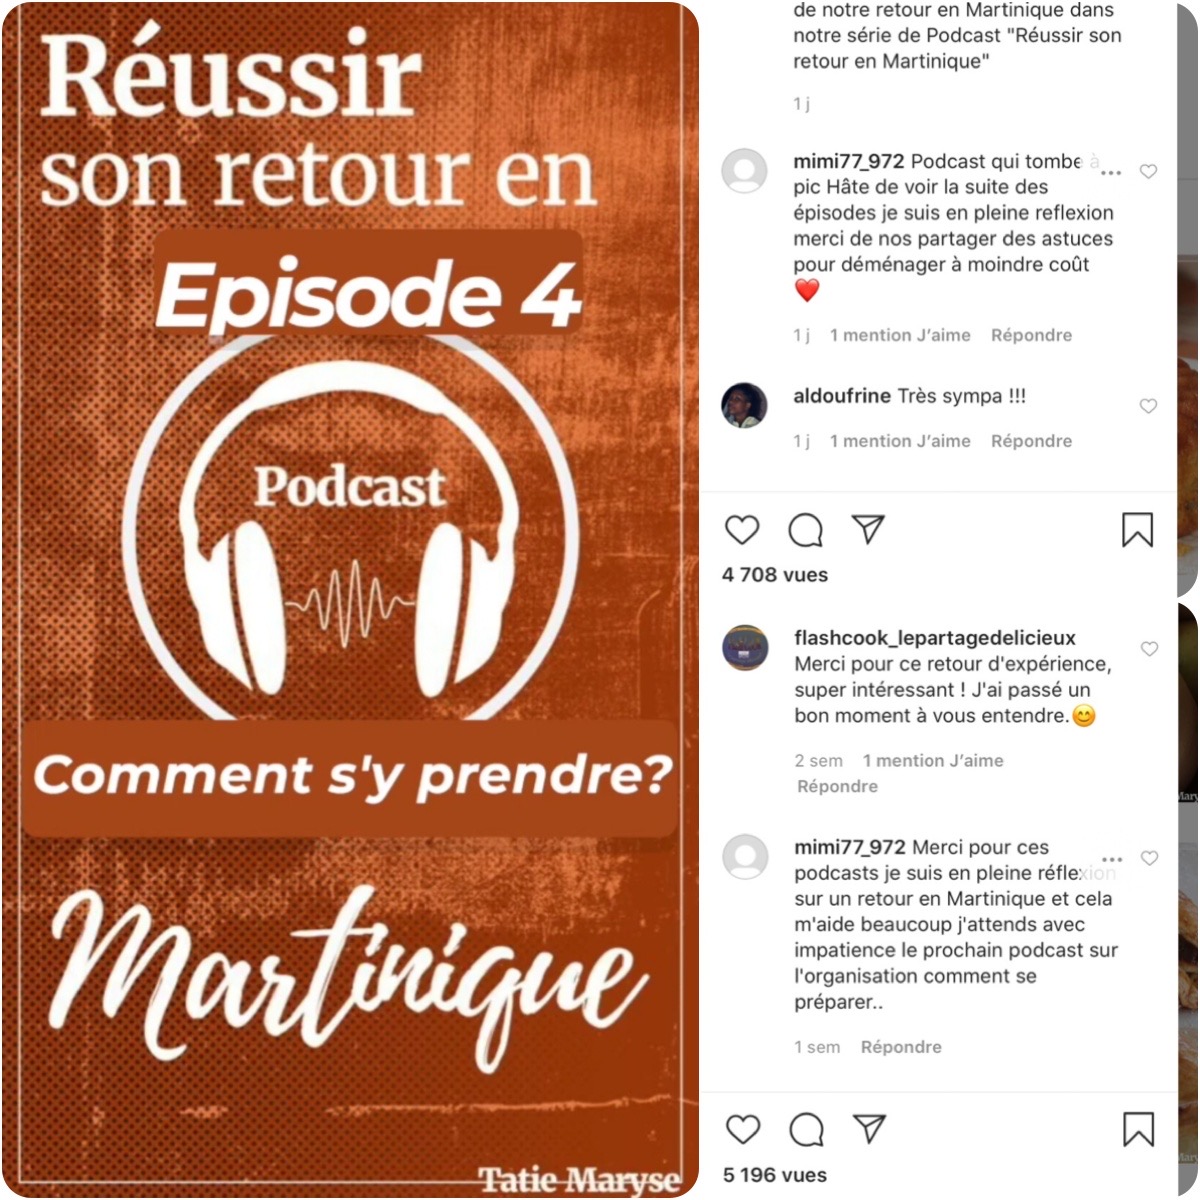 Podcast Tatie Maryse Réussir son retour en Martinique